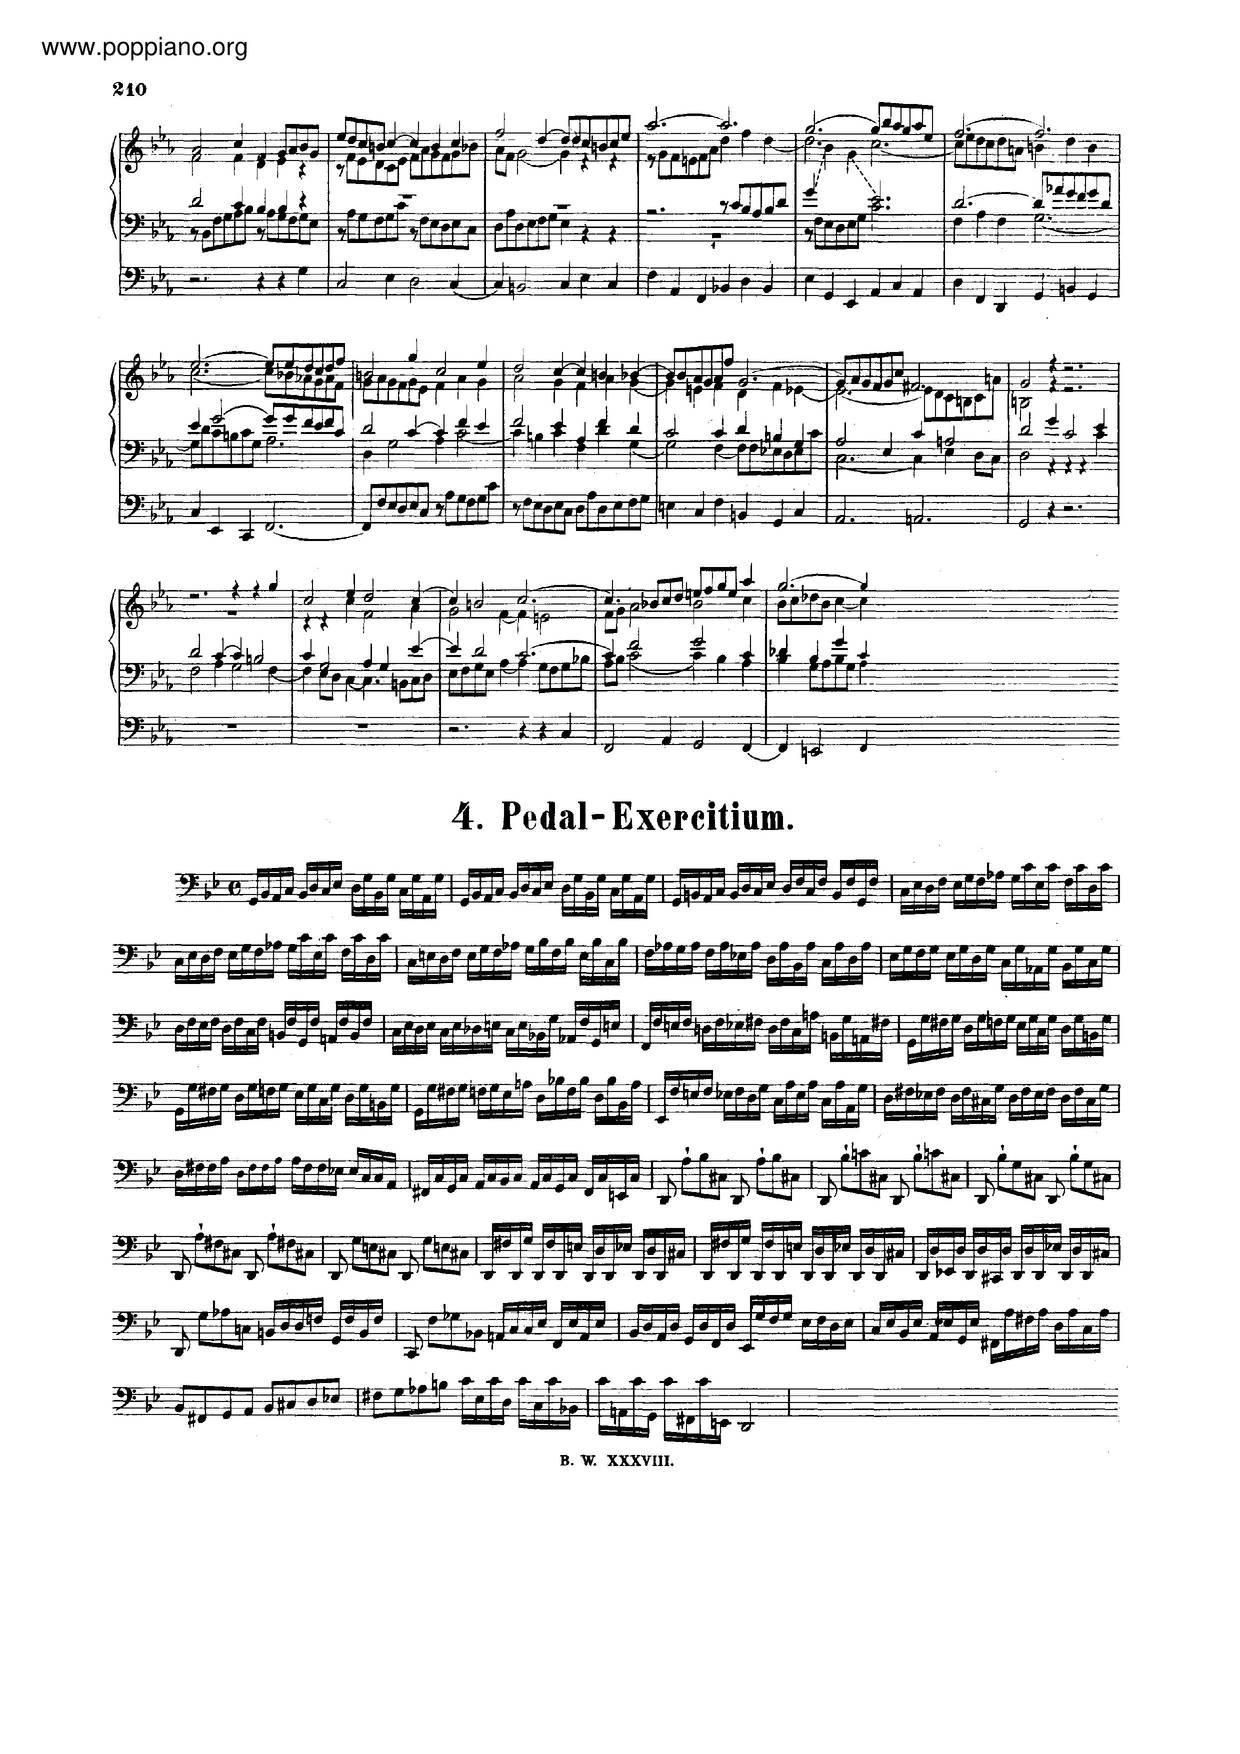 Pedal-Exercitium, BWV 598 Score